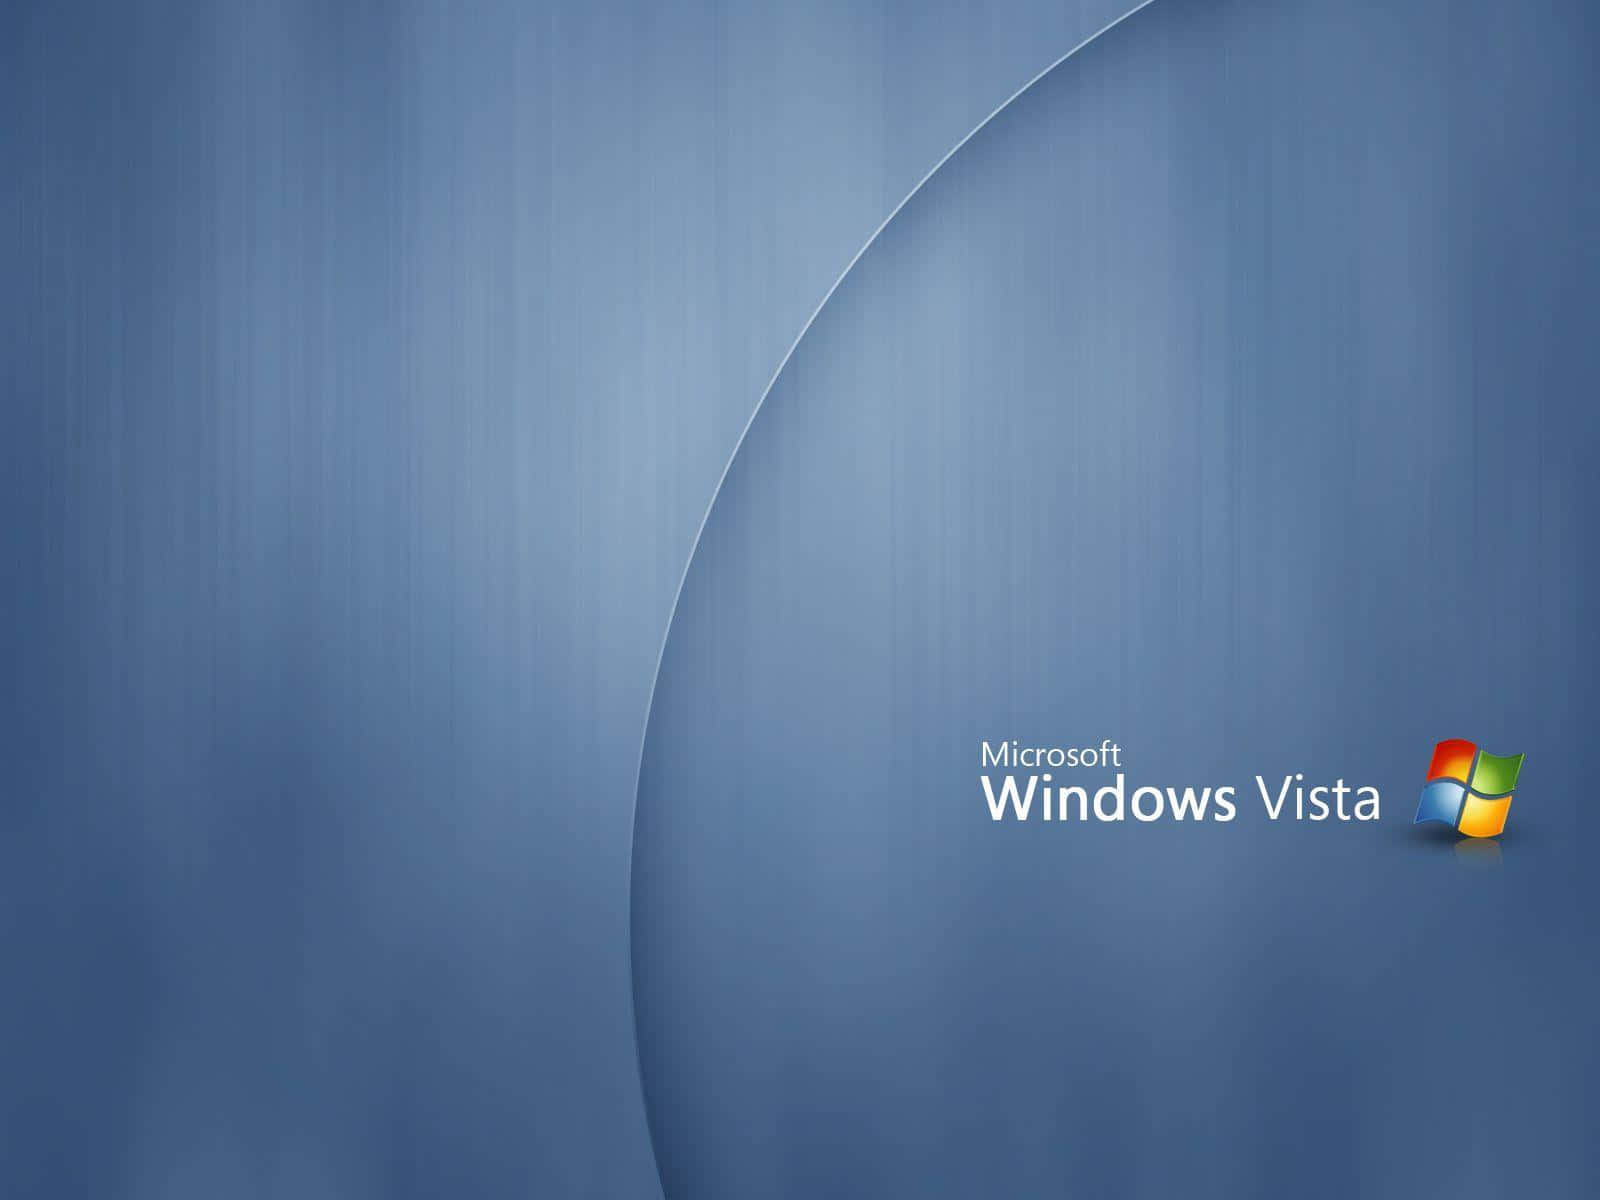 Windowsvista Er Her For At Transformere Din Skrivebord